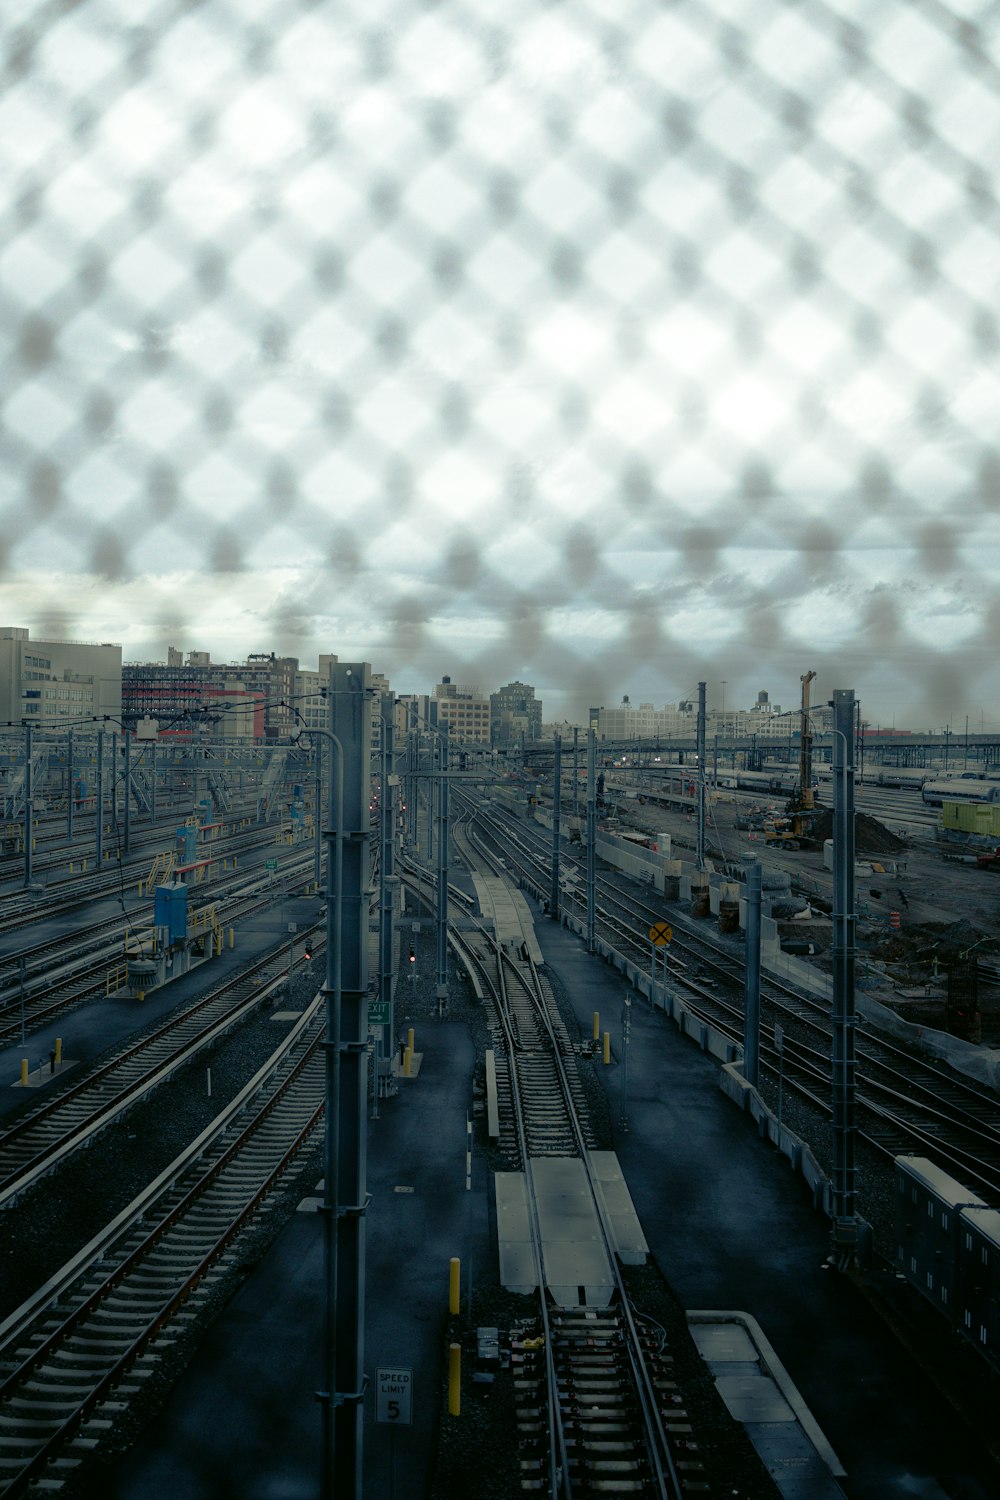 Una vista de un patio de trenes a través de una valla